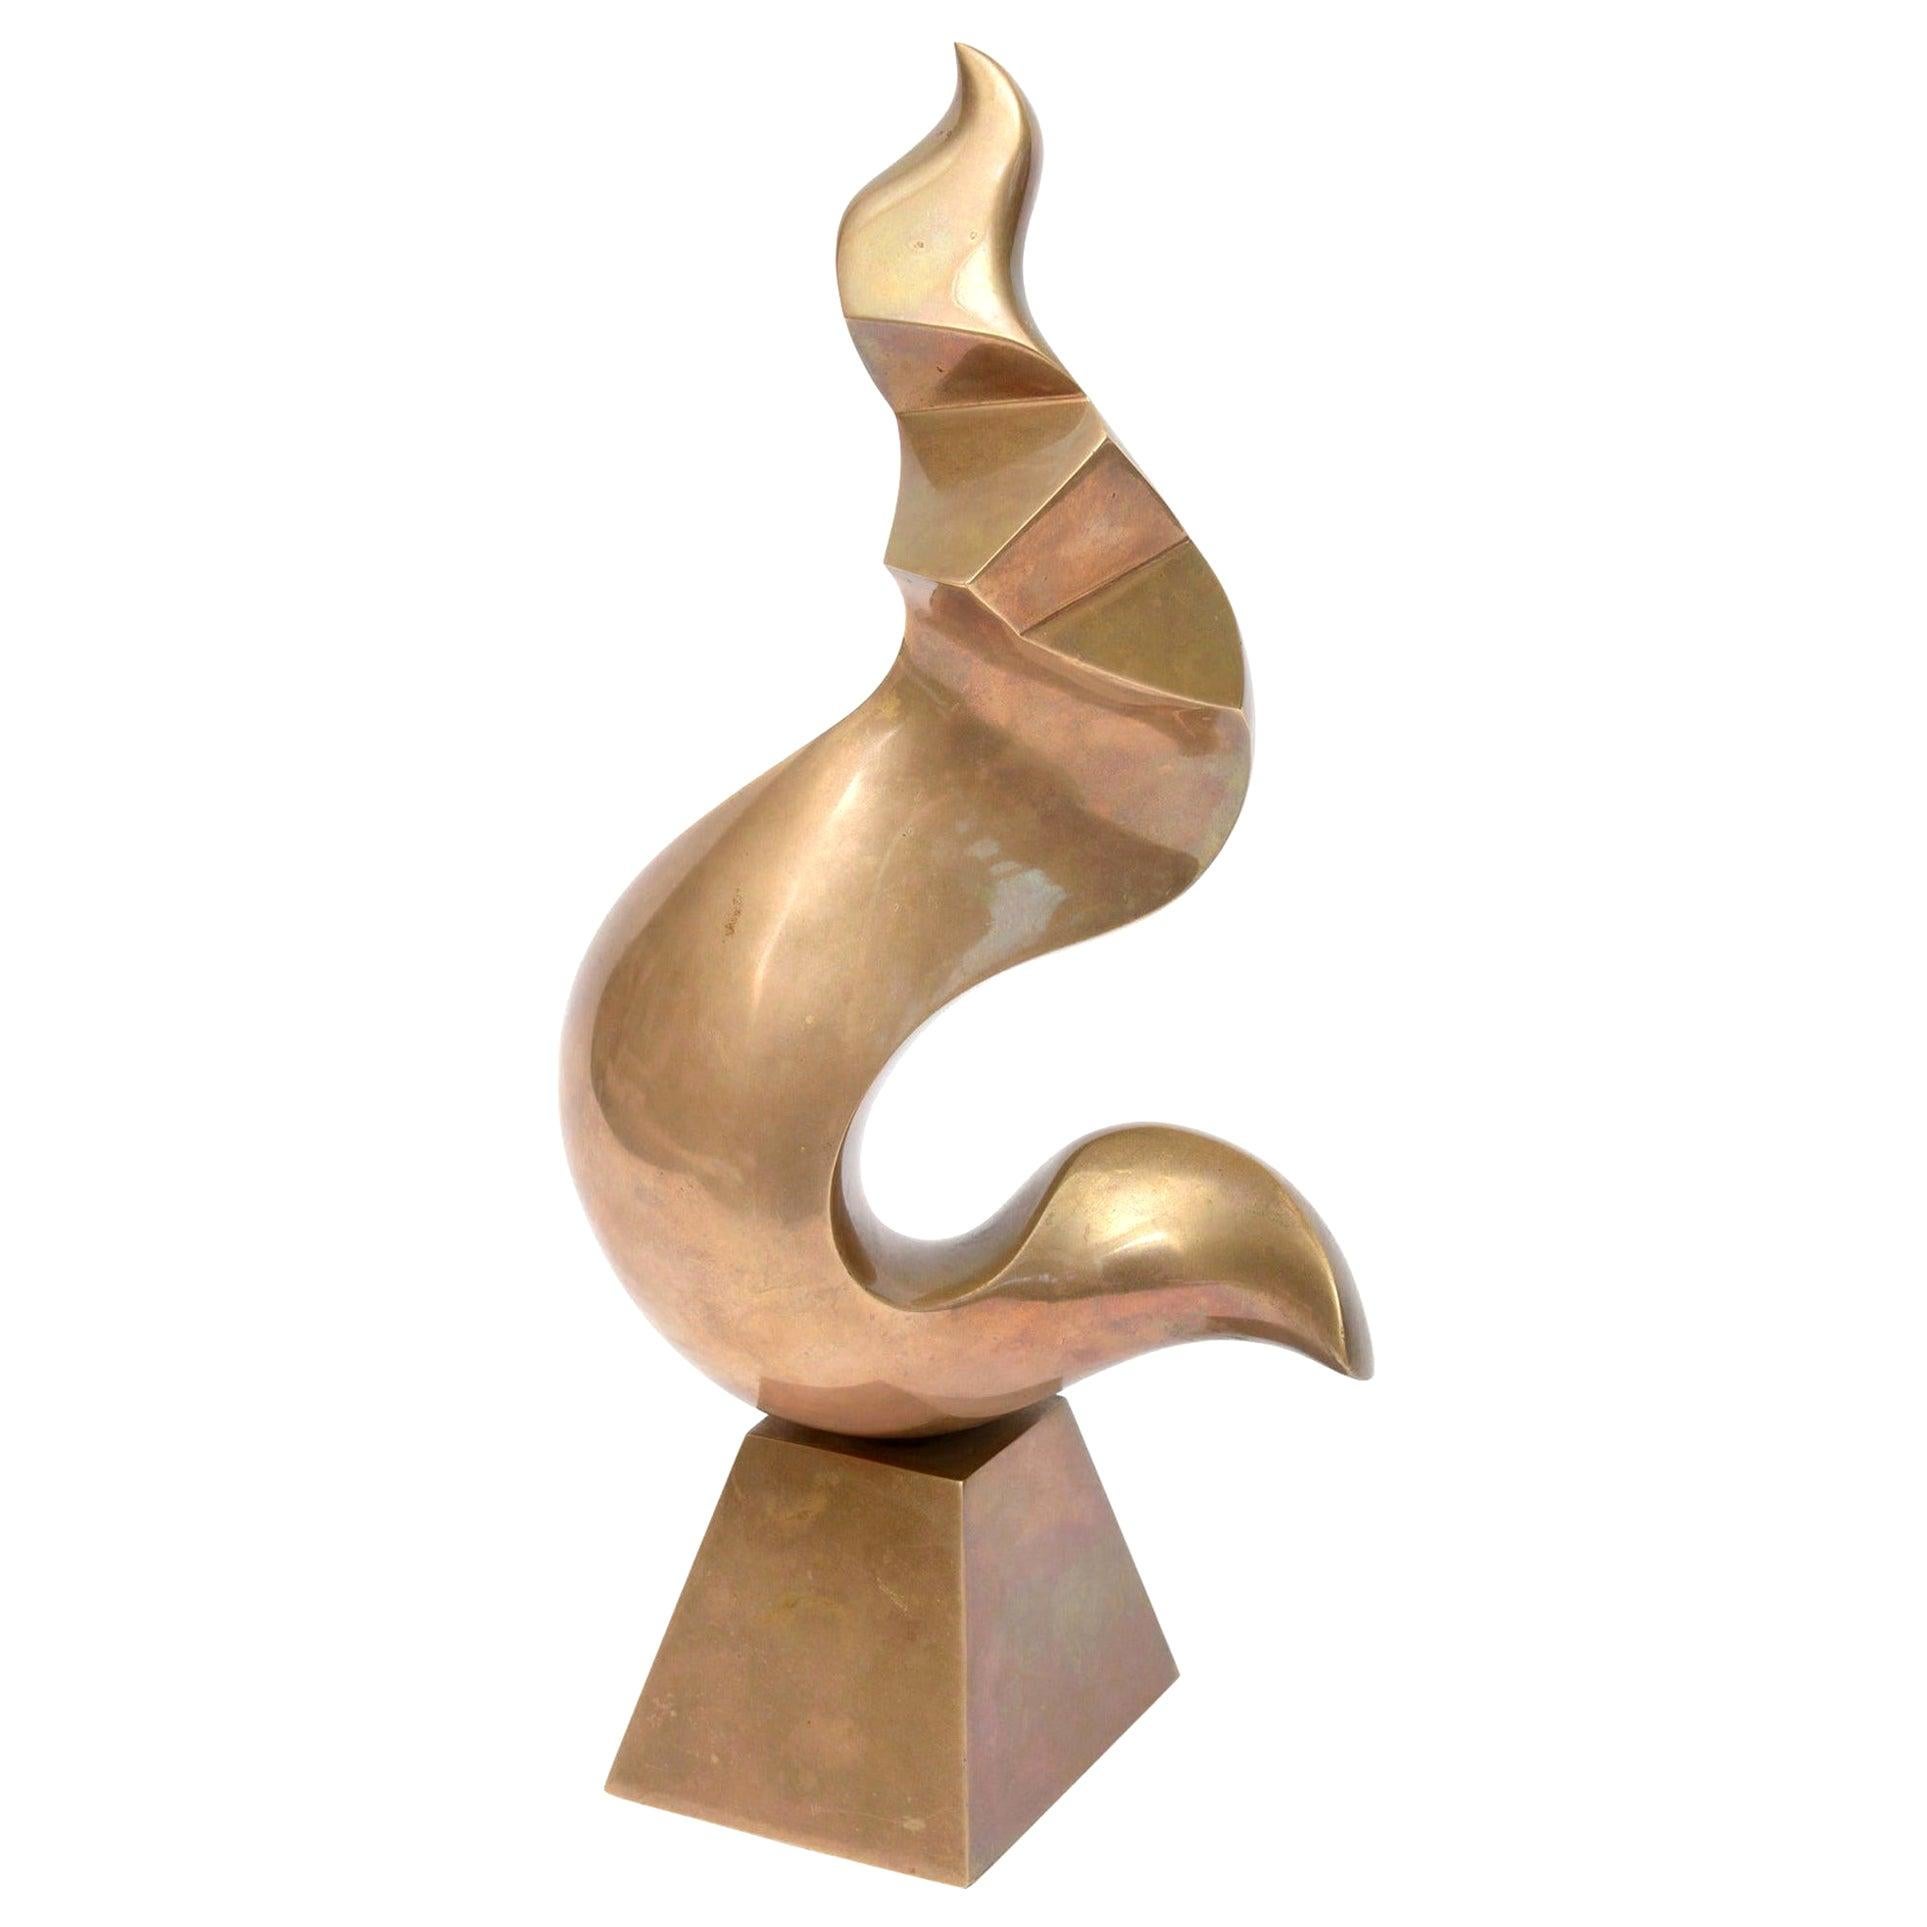 Antonio Grediaga Kieff Bronze Abstract Sculpture Vintage